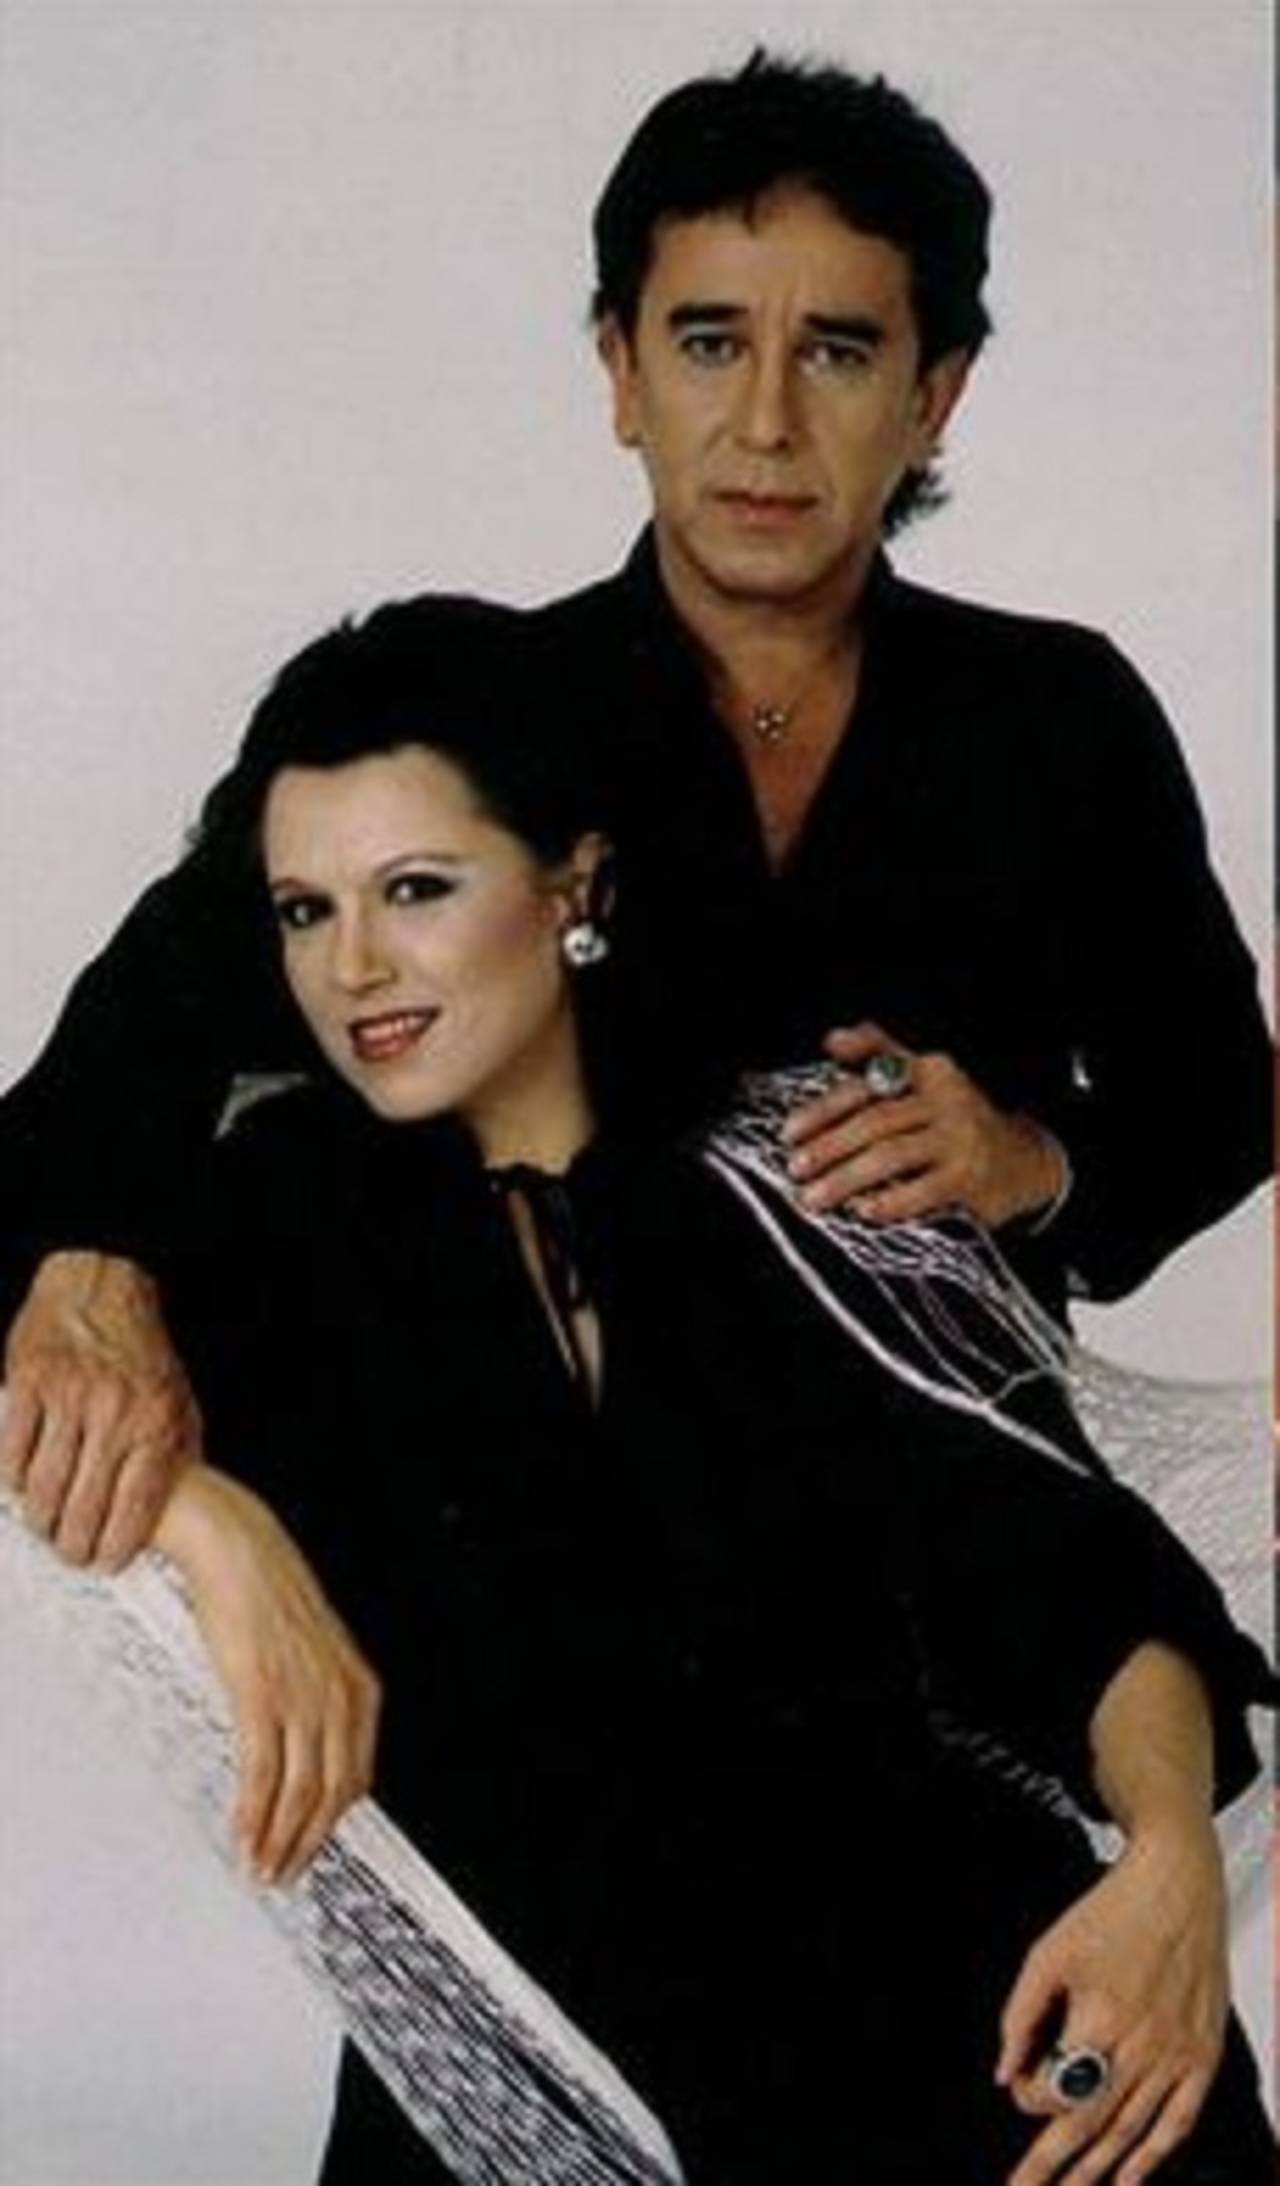 Deceso. Carmela Rey, del dueto Carmela y Rafael, falleció víctima de un infarto mientras dormía. (ESPECIAL)